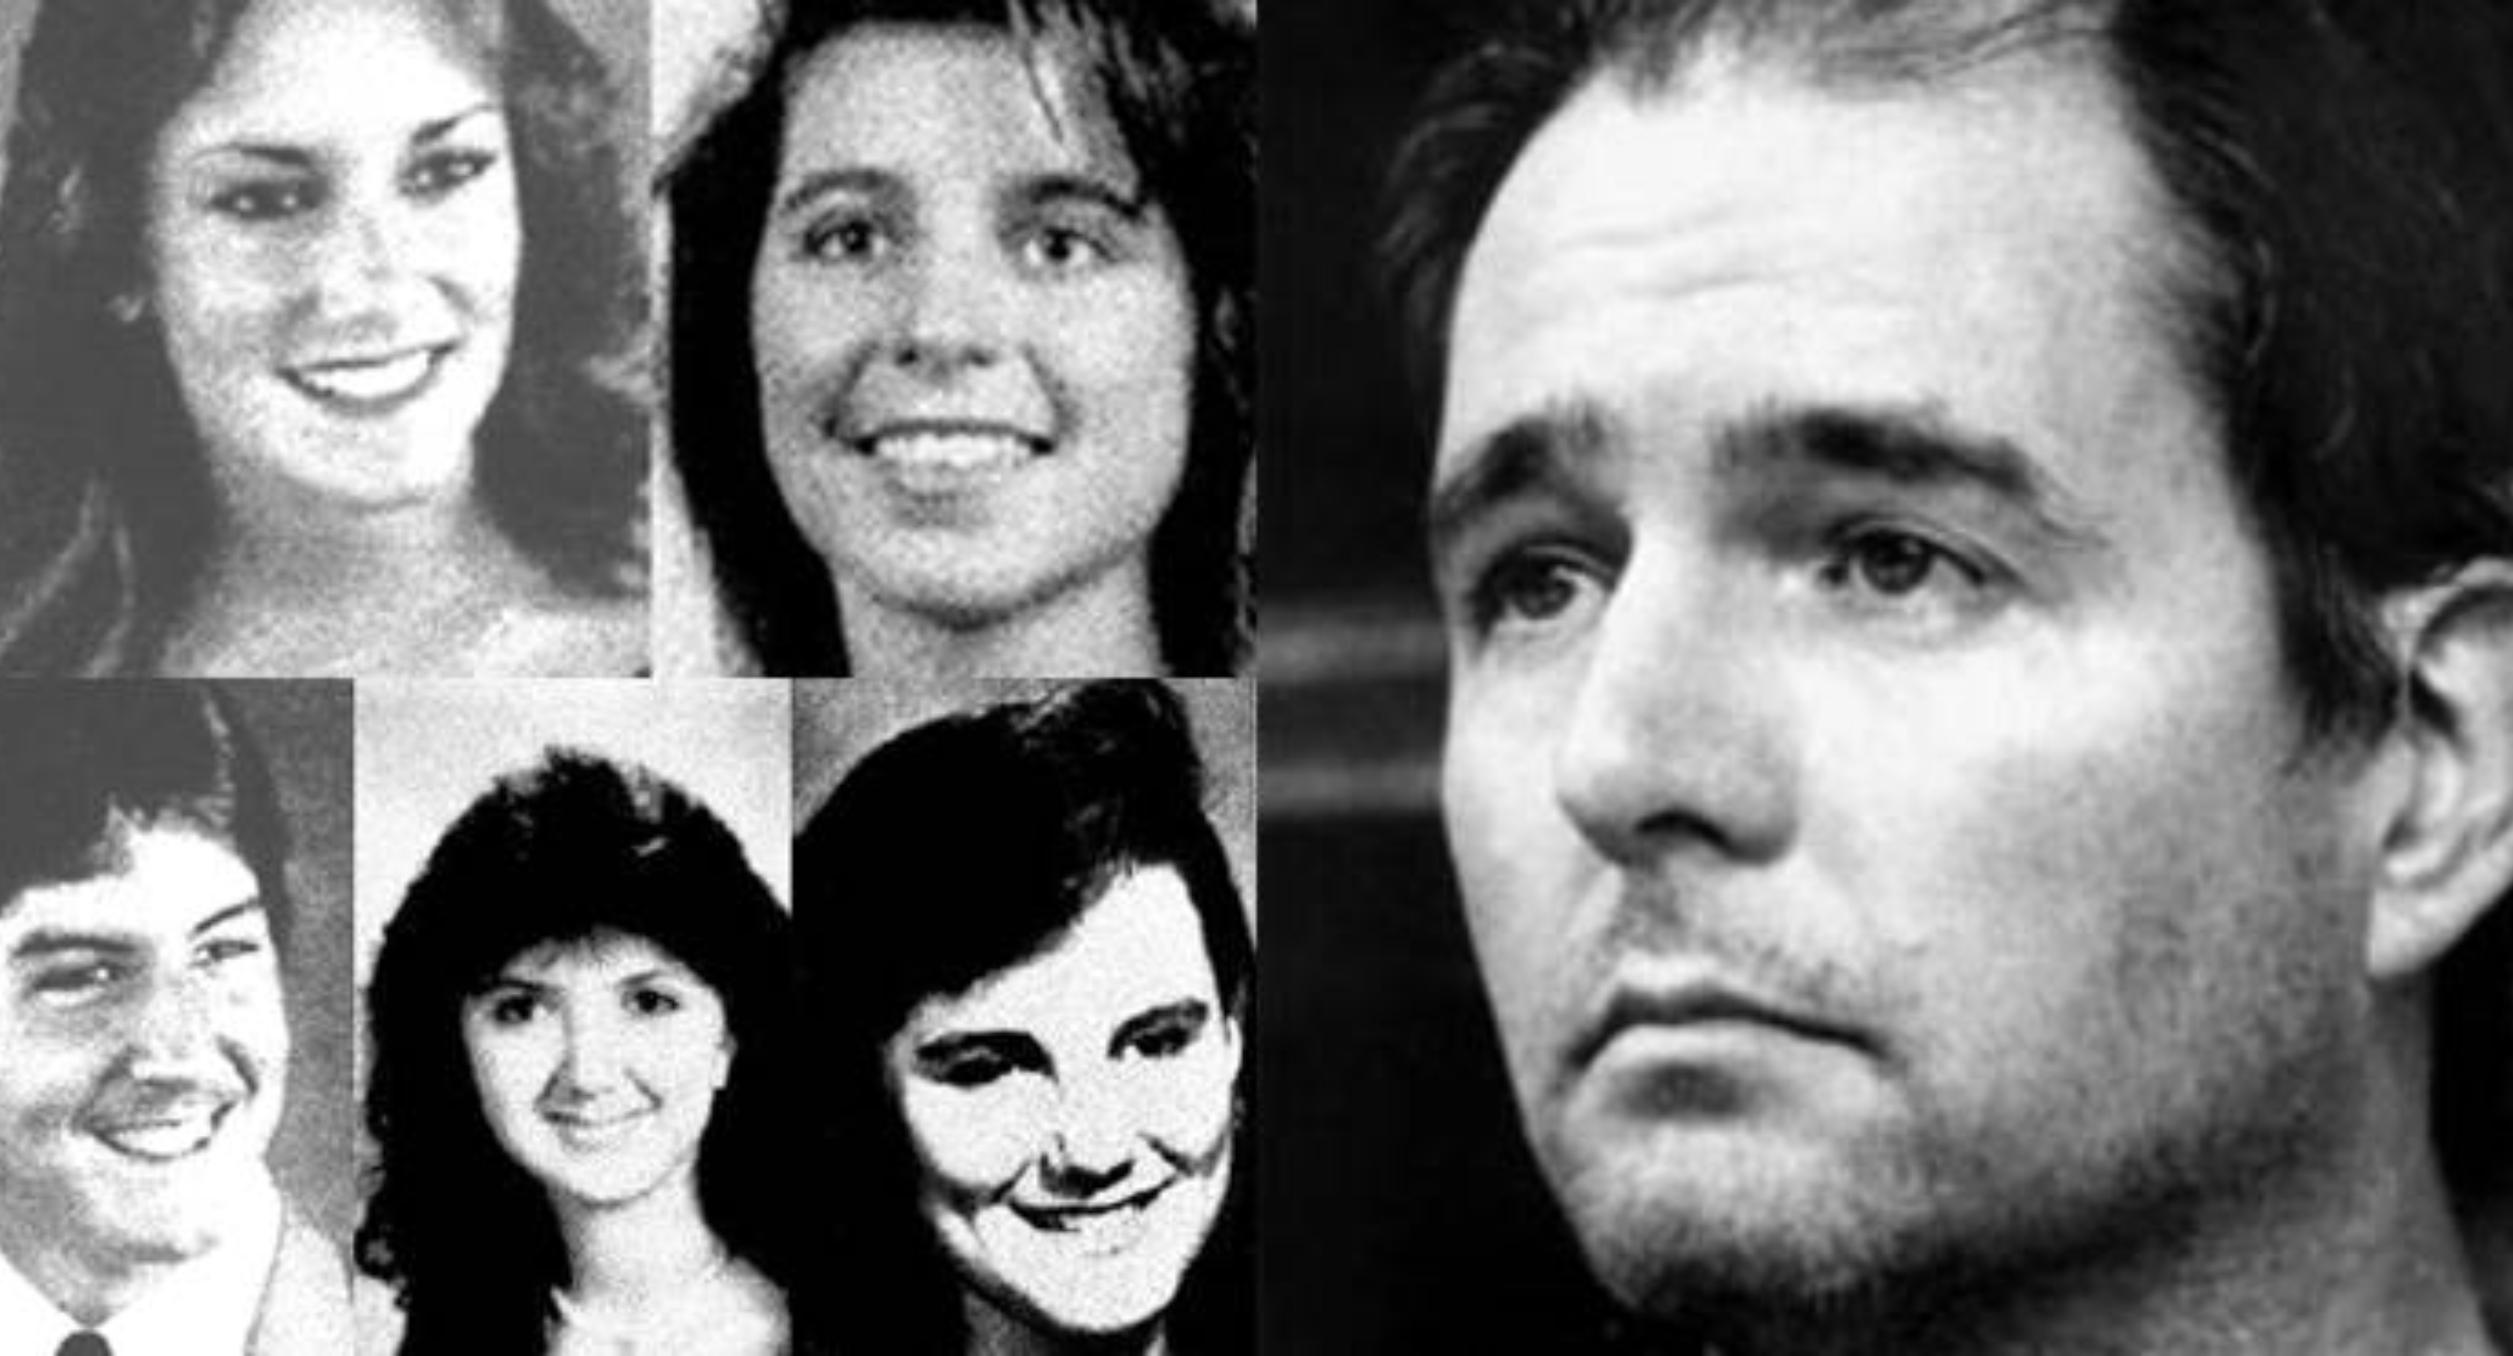 Η αληθινή ιστορία πίσω από τις ταινίες Scream: Ντάνι Ρόλινγκ η The Gainesville Ripper ο ψυχοπαθής κατά συρροή δολοφόνος που έσφαξε 5 φοιτητές